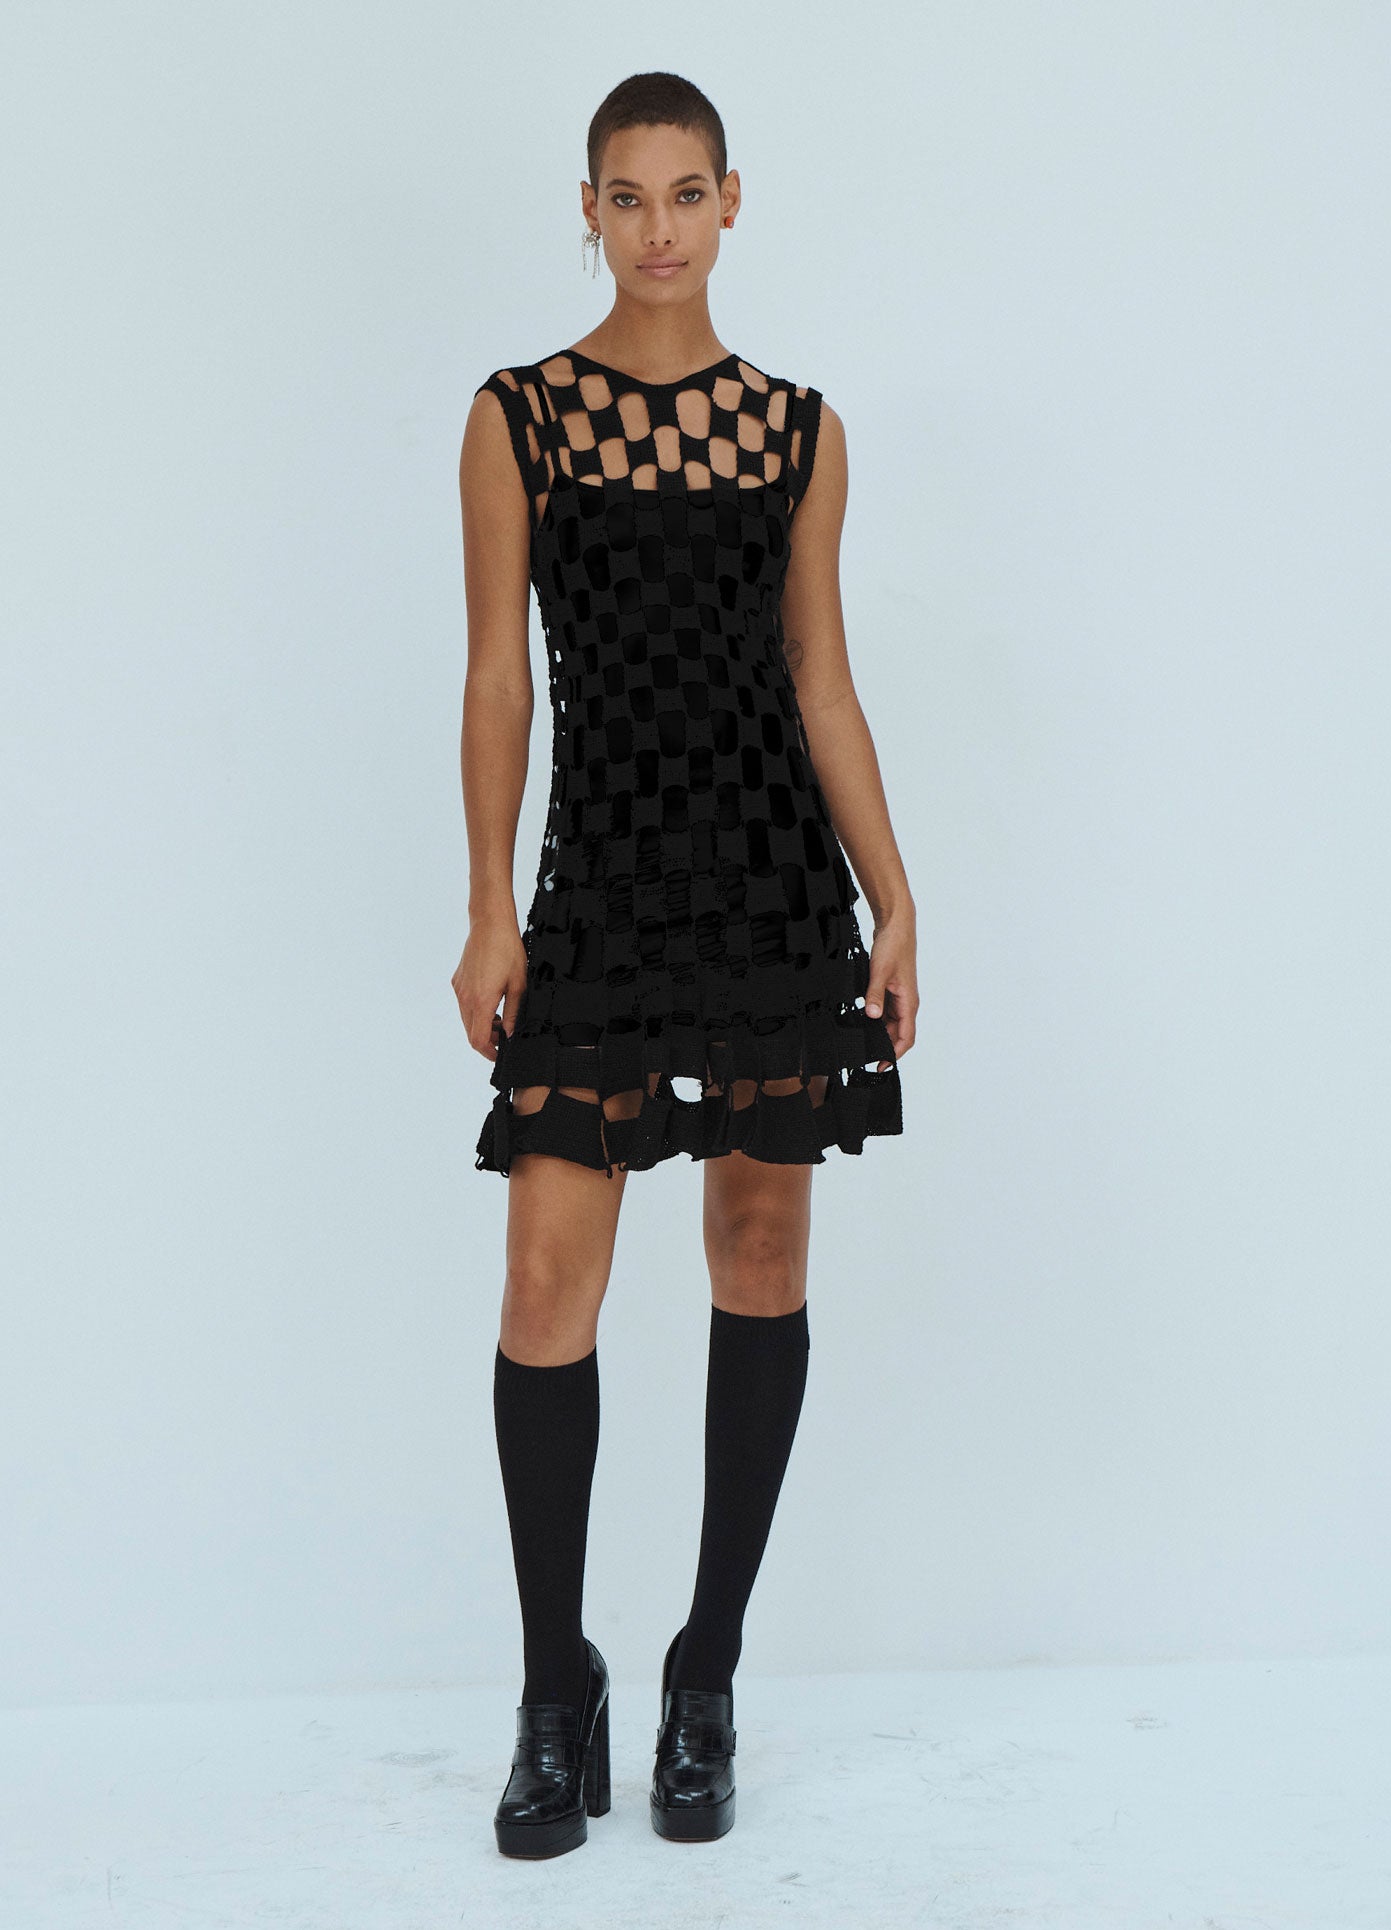 MONSE Square Crochet Mini Dress in Black on model full front view